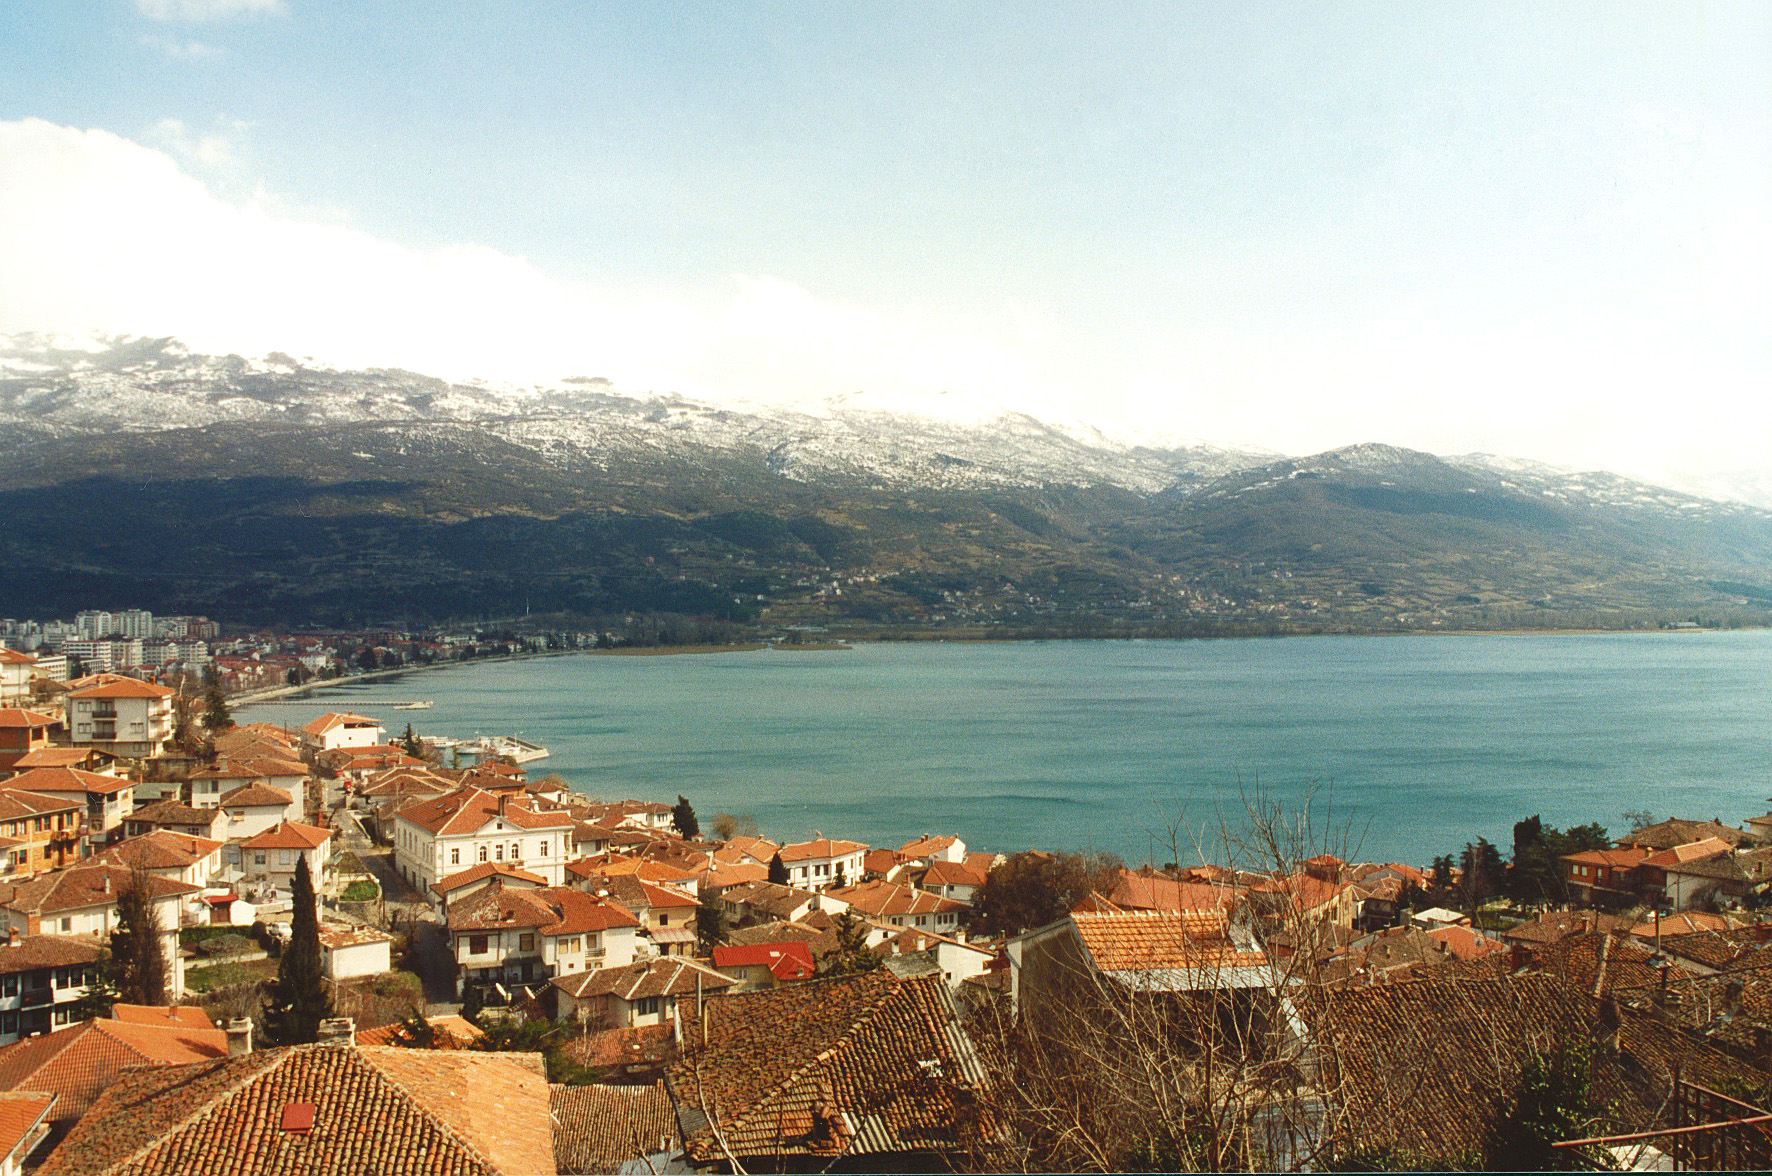 Ohridské jezero - balkánský klenot